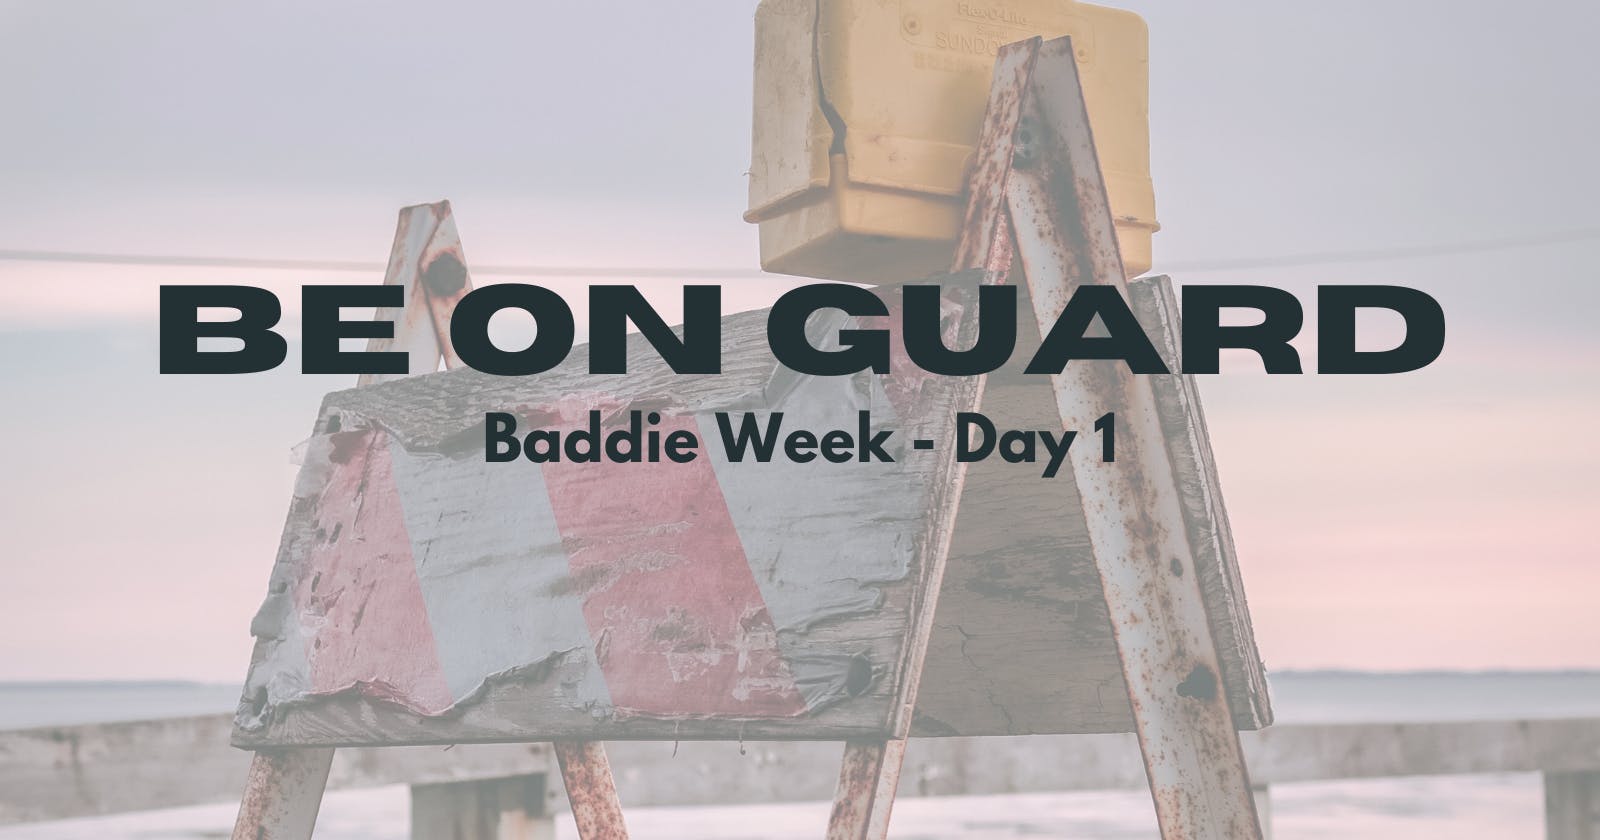 Baddie Week - Day 1